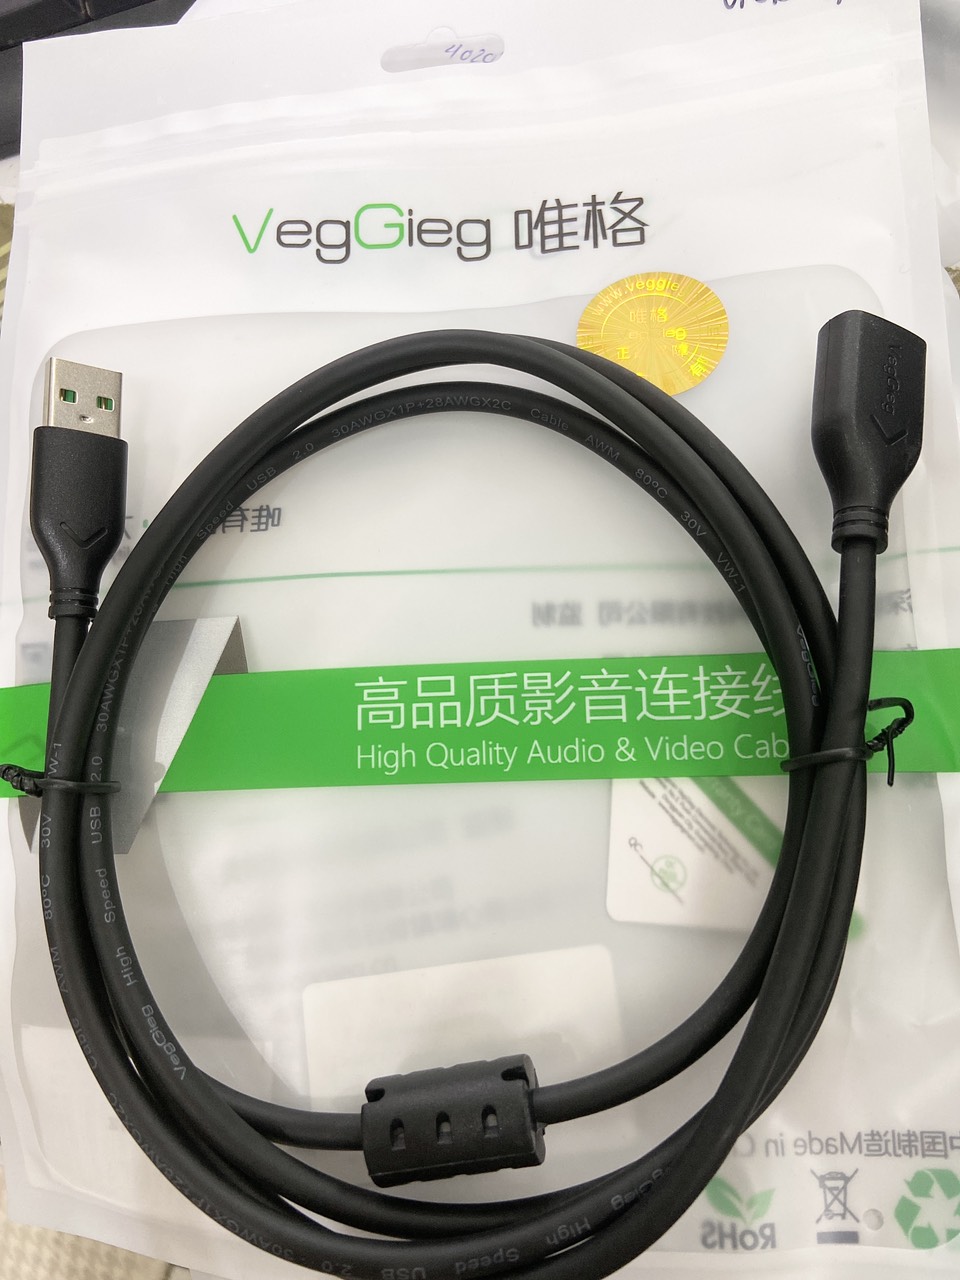 Dây USB nối dàI  5m 2.0 VegGieg Chính hãng VU103